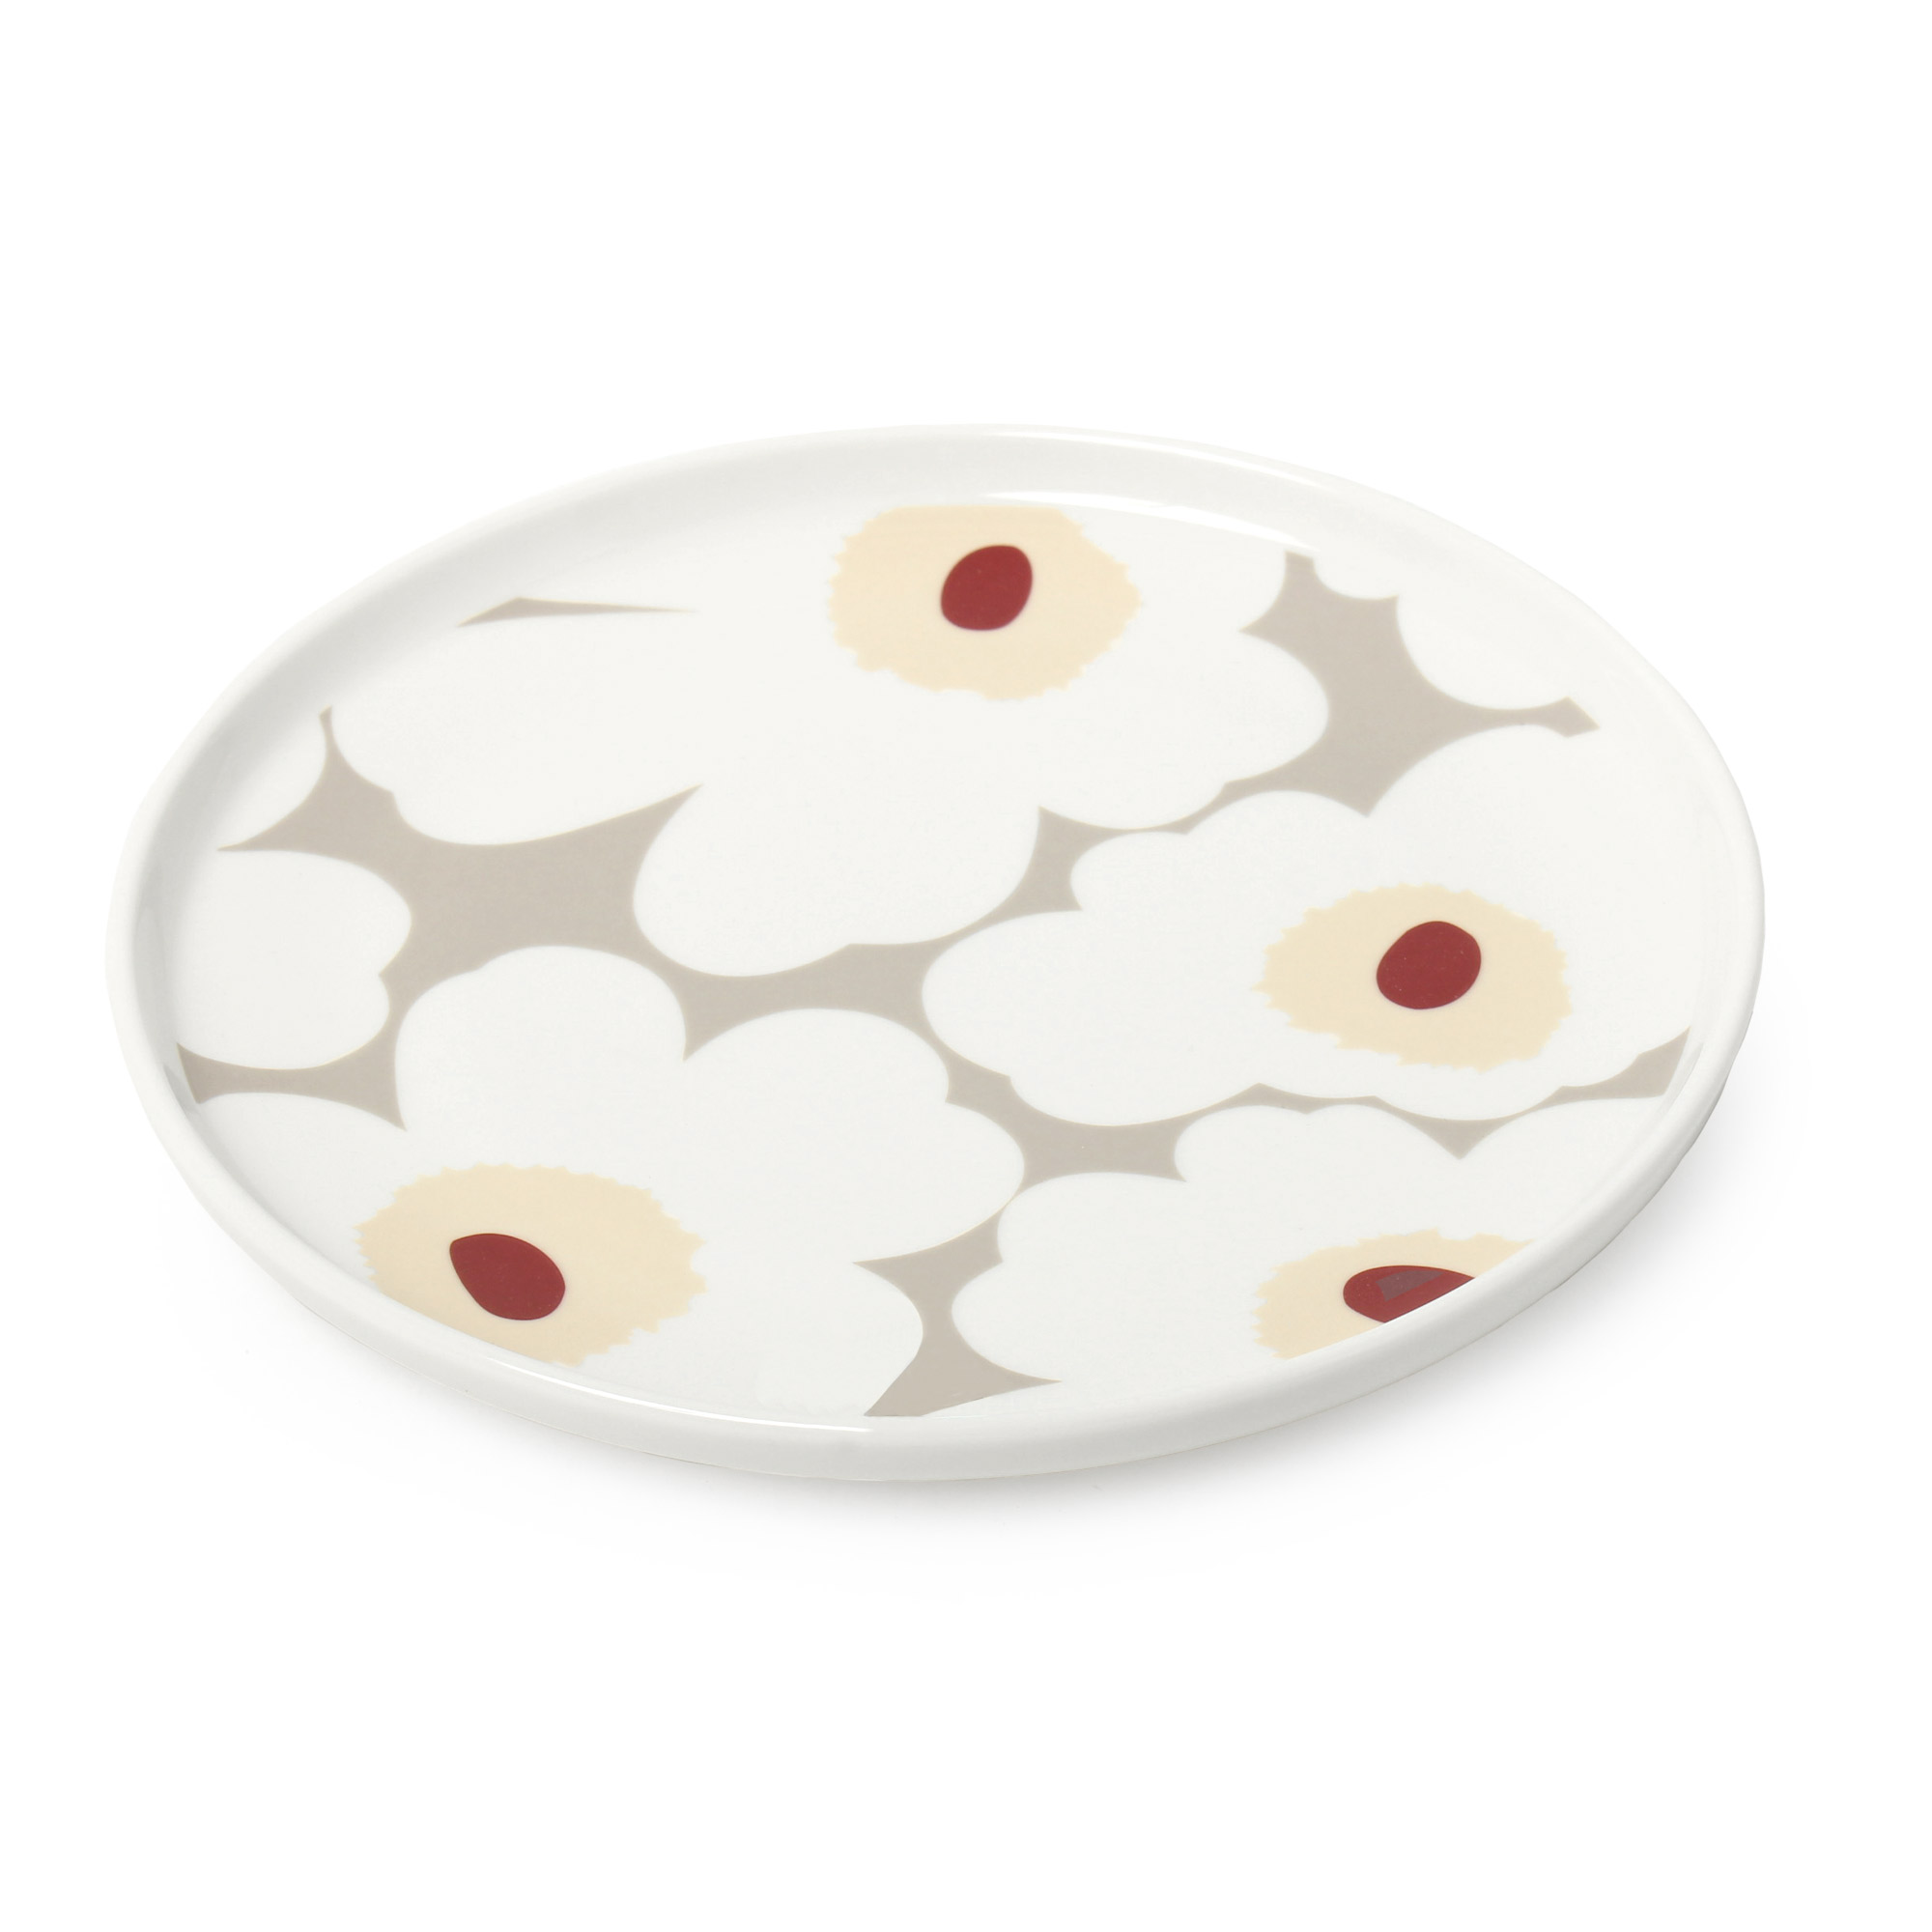 マリメッコ プレート 皿 20cm MARIMEKKO PLATE ウニッコ キッチン 食卓 食器 丸皿 かわいい おしゃれ デザイン 北欧 ブランド  シンプル 花柄 食器